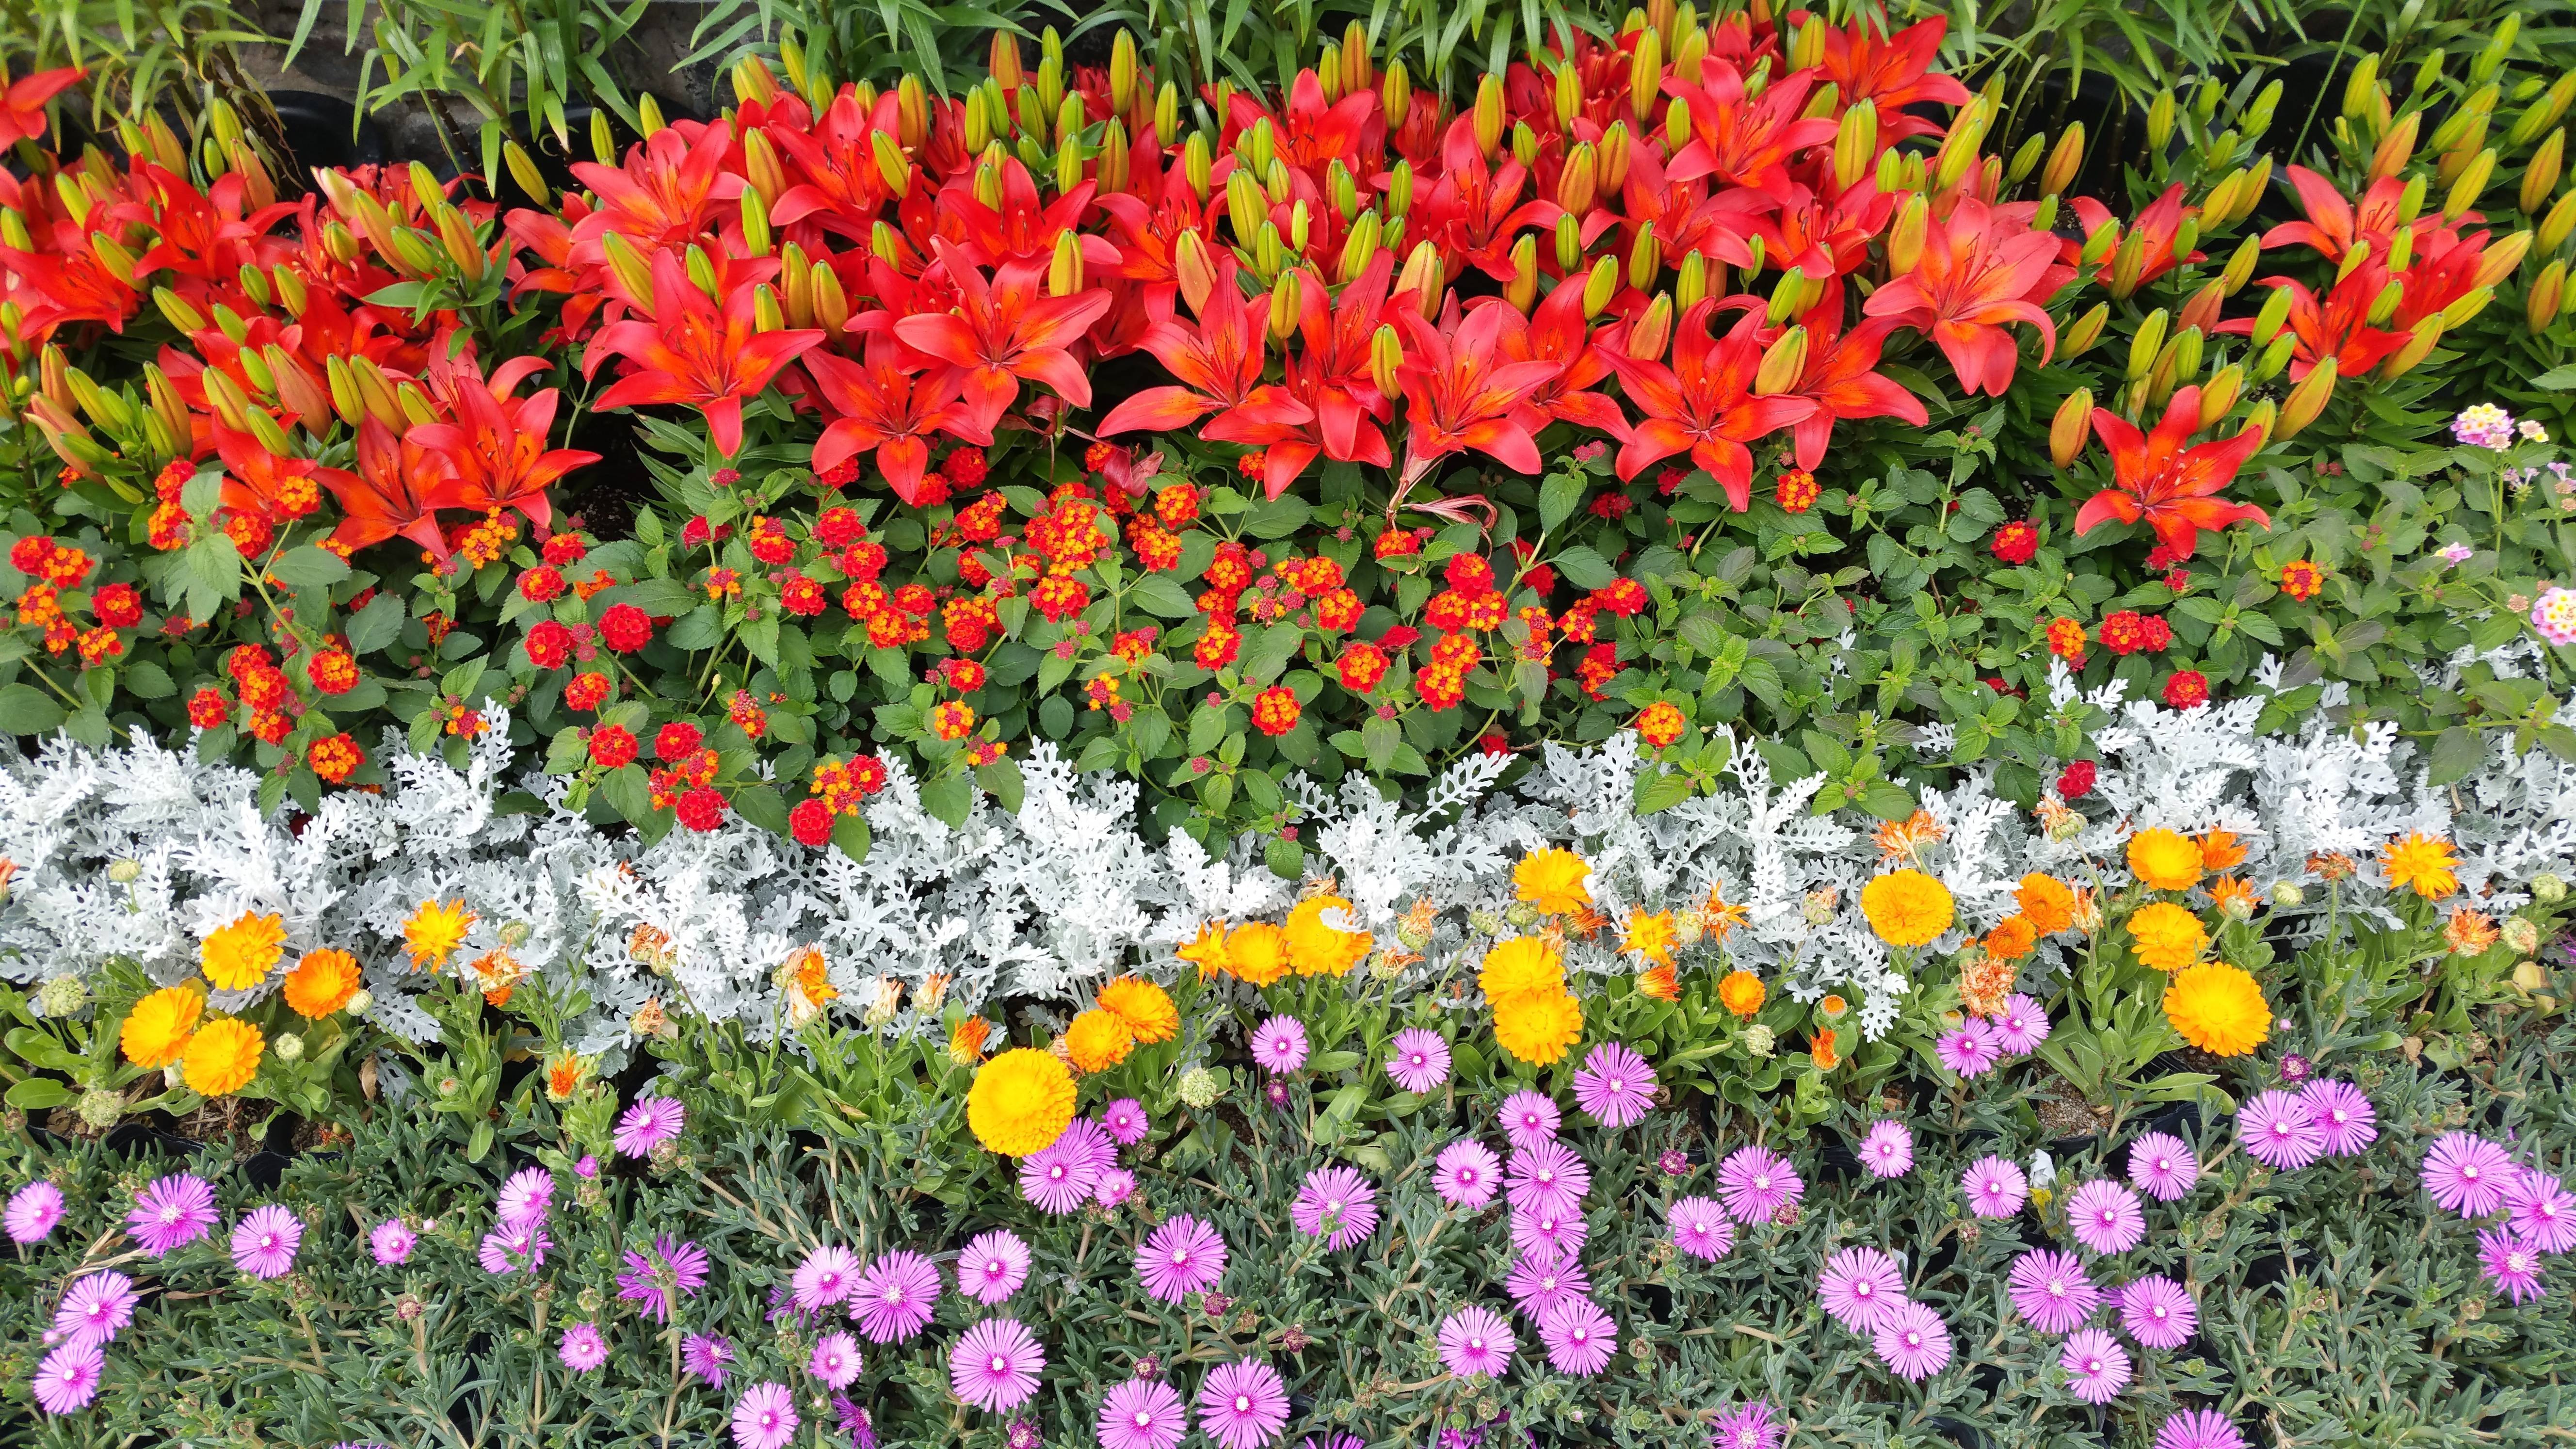 Как посадить лилии чтобы на участке они смотрелись красиво с лилейниками, розами, гладиолусами, флоксами, ирисами, пионами, хостами, георгинами: фото и схемы оформления садового участка